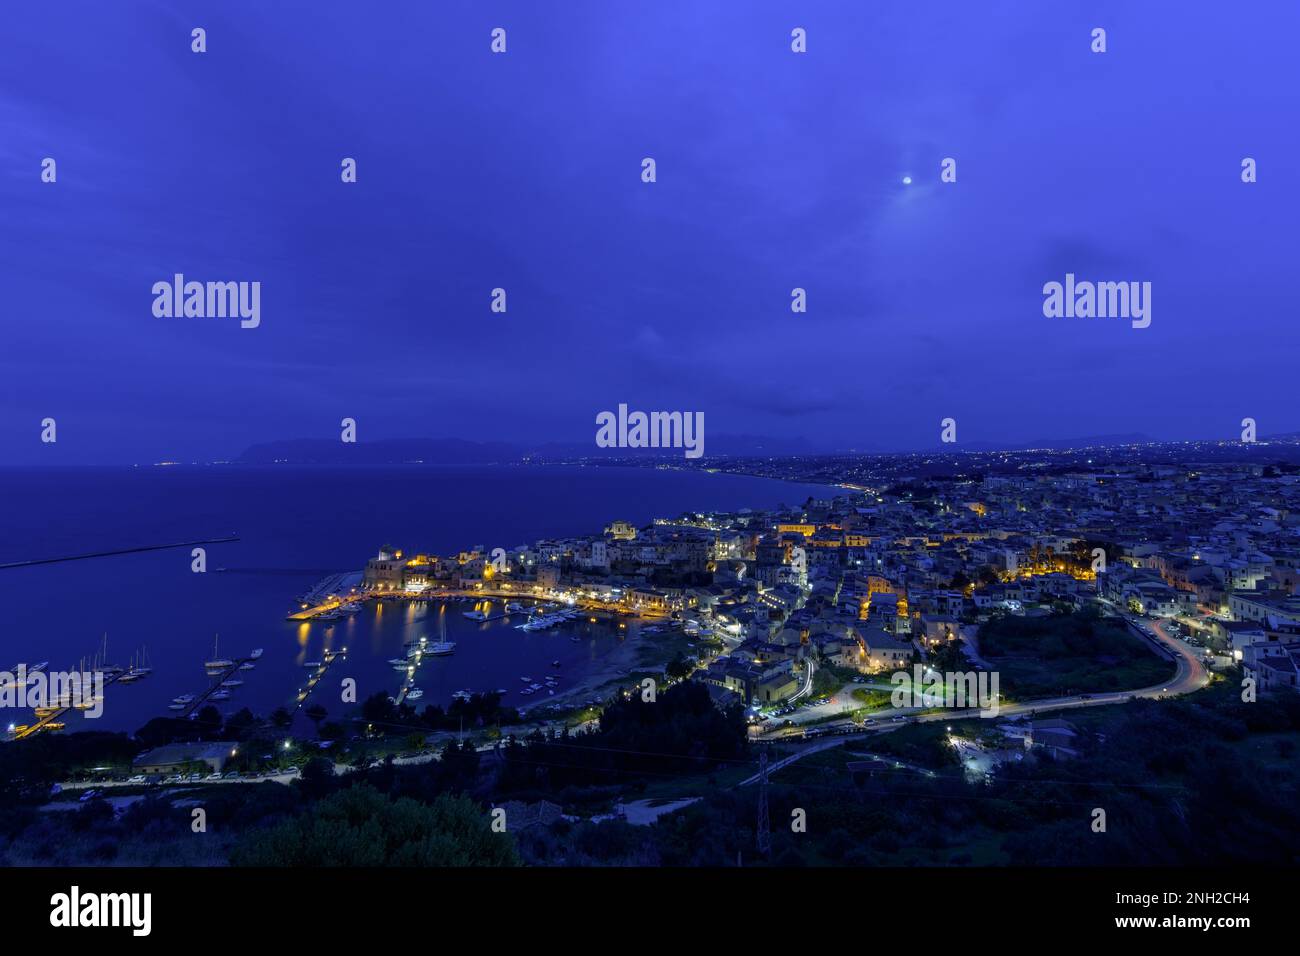 Town of Castellammare del Golfo, Sicily Stock Photo - Alamy